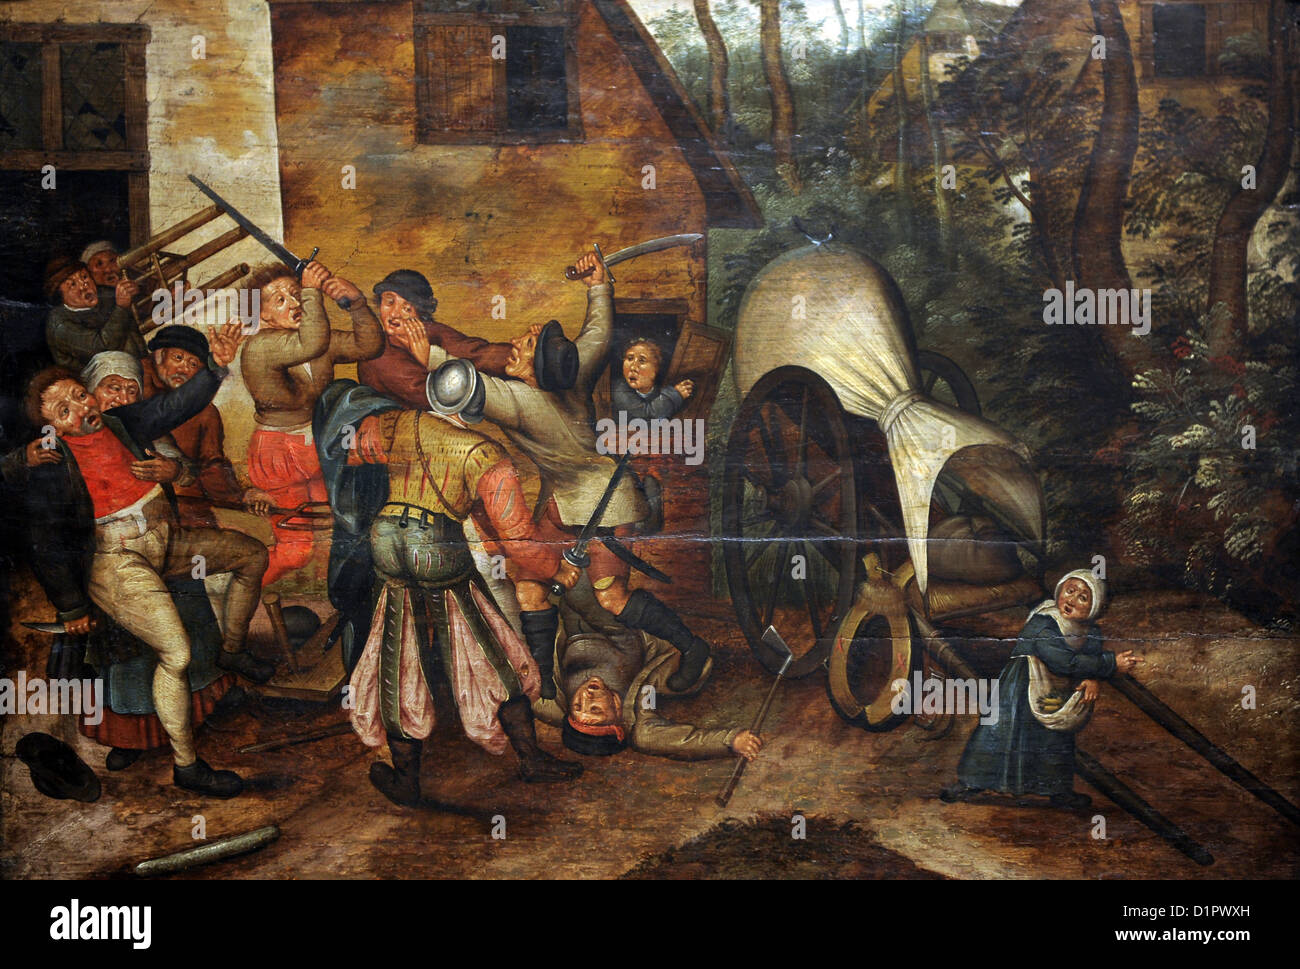 Pieter Brueghel le Jeune (1564-1636). Peintre flamand. Rixe entre paysans et soldats. Musée des beaux-arts de Budapest. Banque D'Images